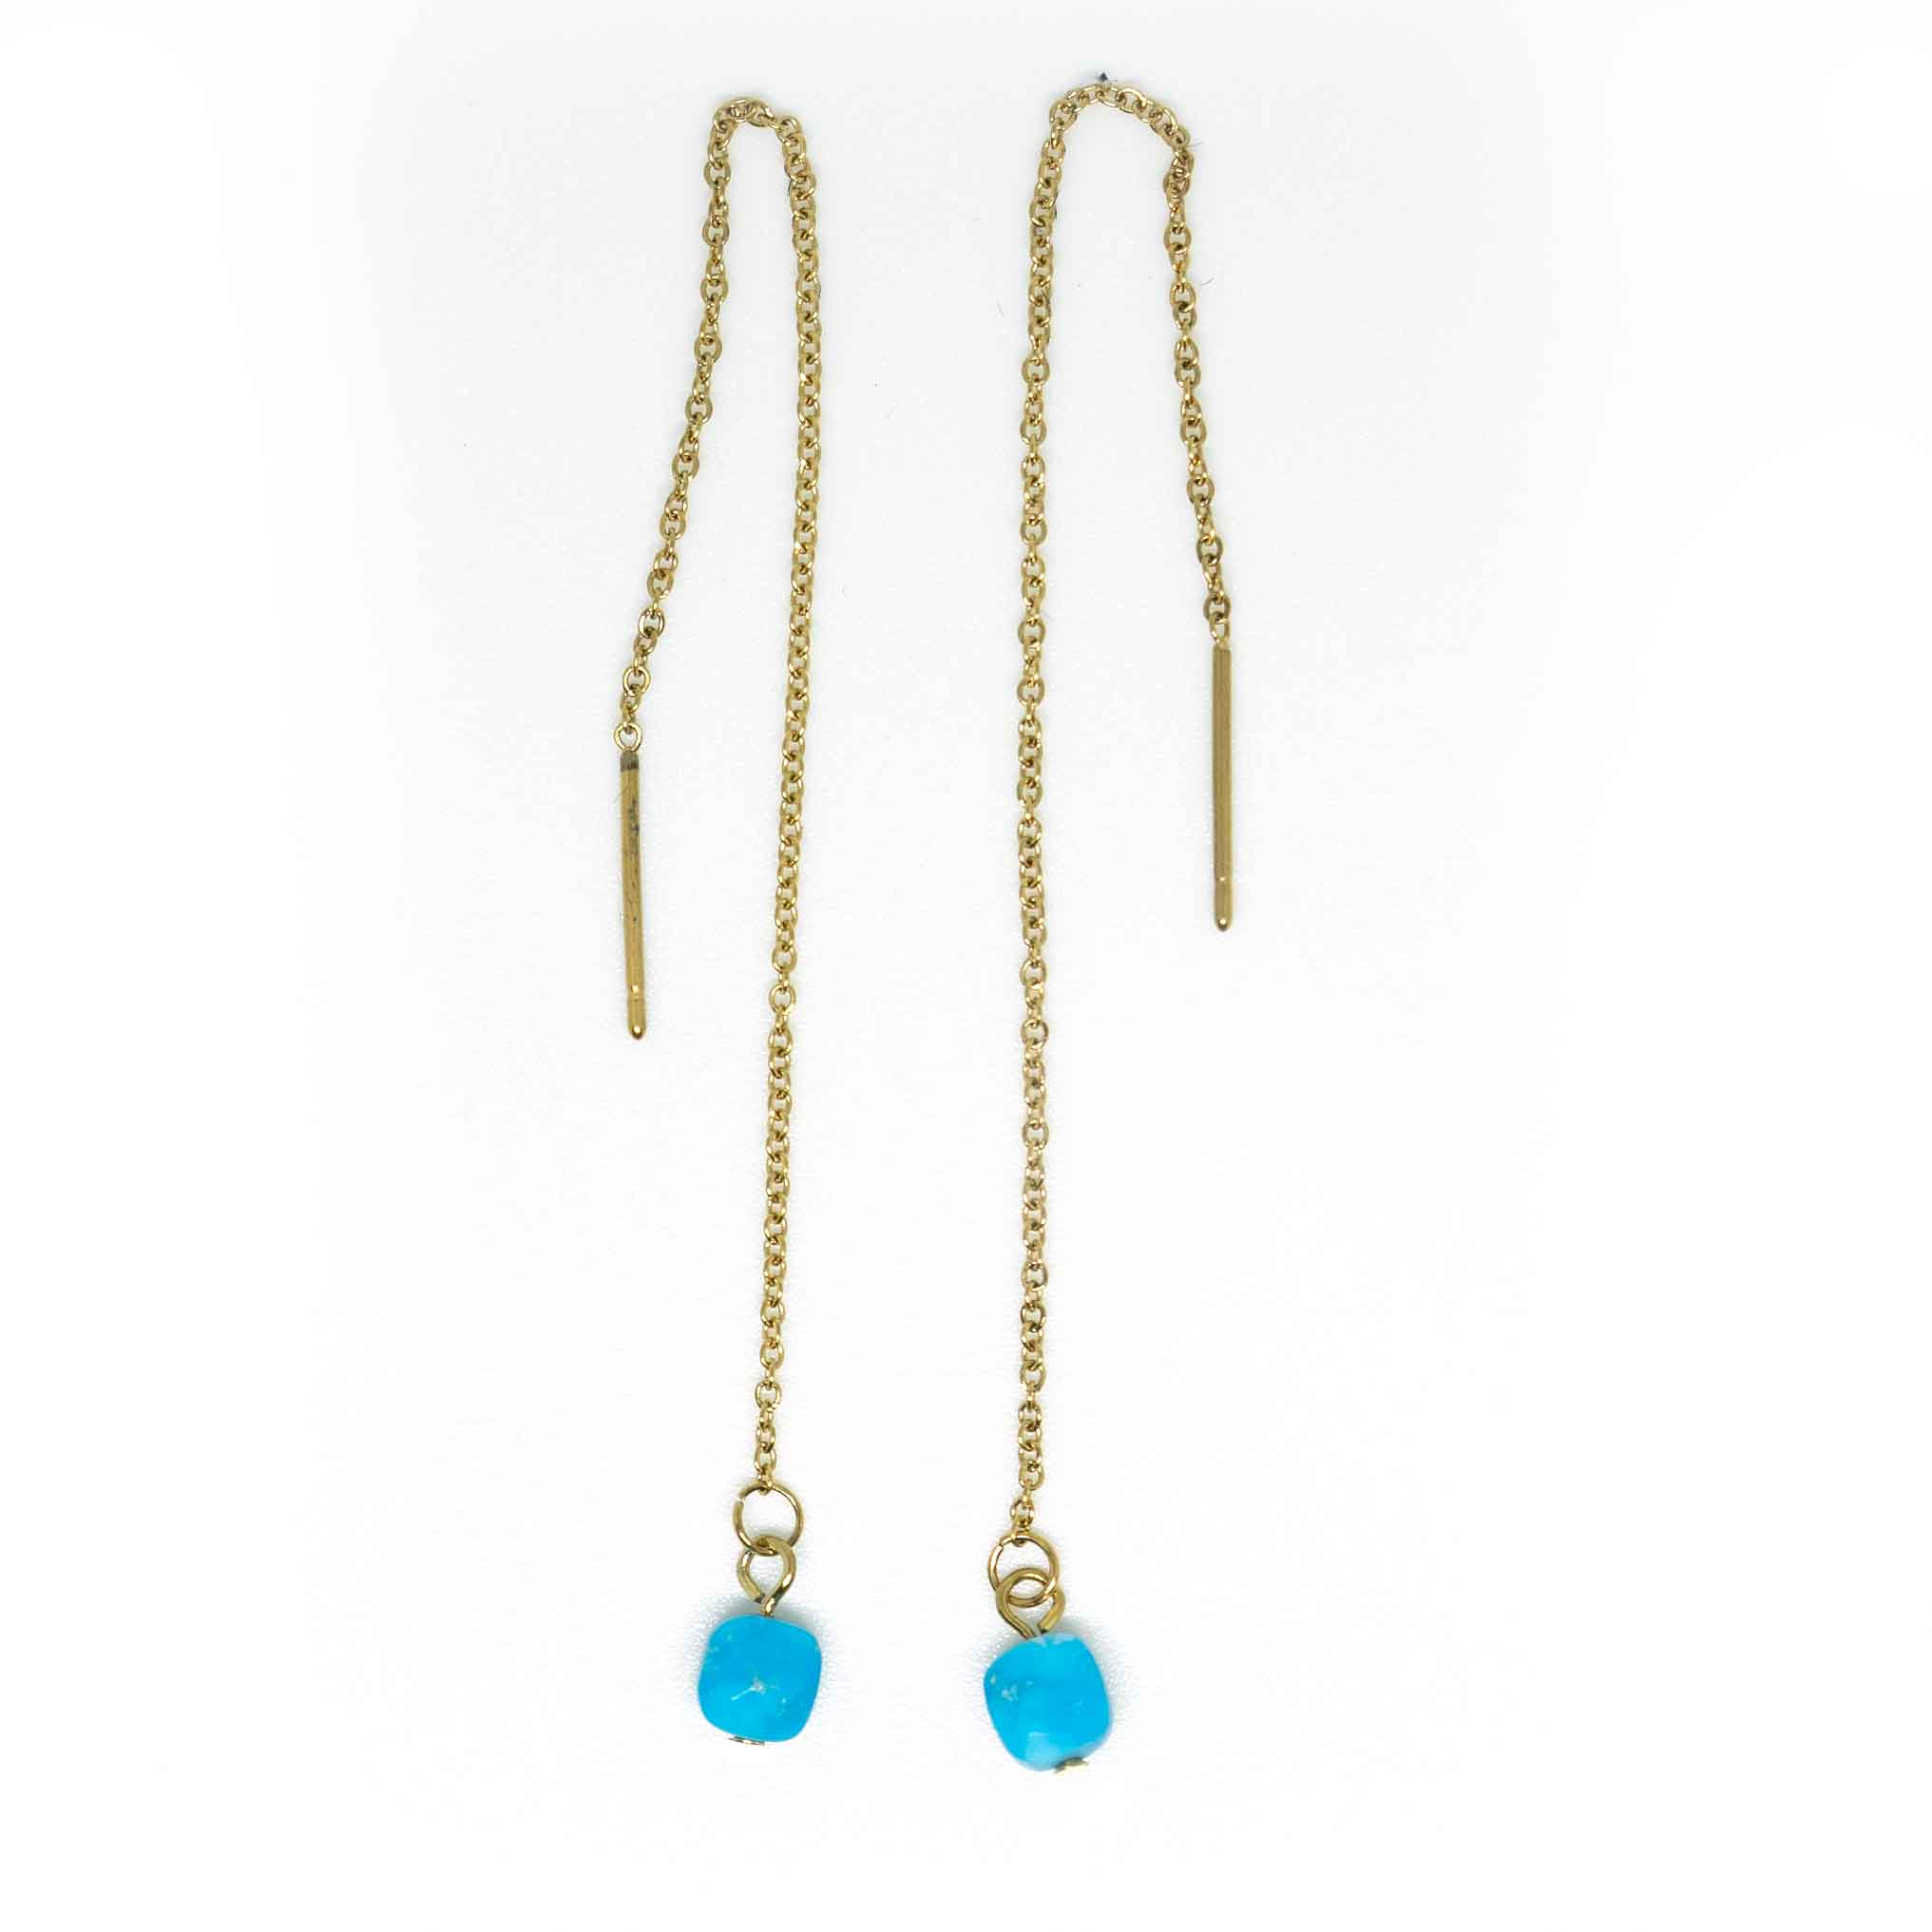 Turquoise Elegante Threaders Earrings